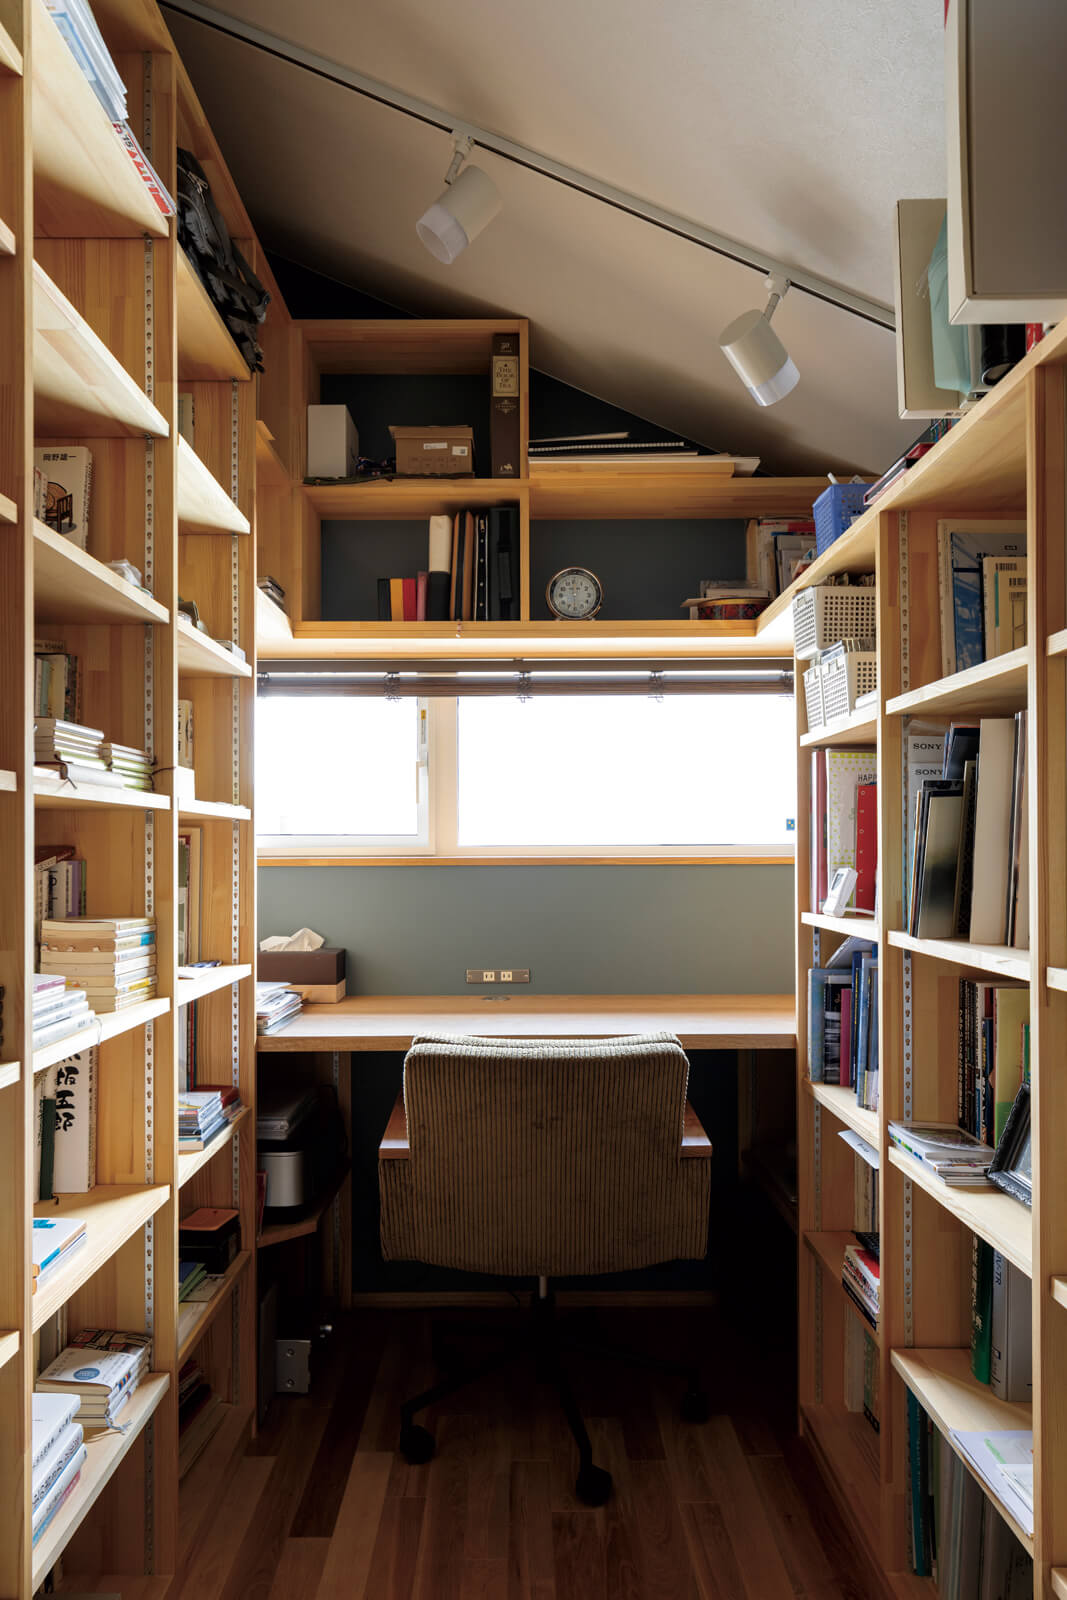 天井まで届く造作本棚が印象的なIさんの書斎。階段側の小窓でリビングの様子が感じられる